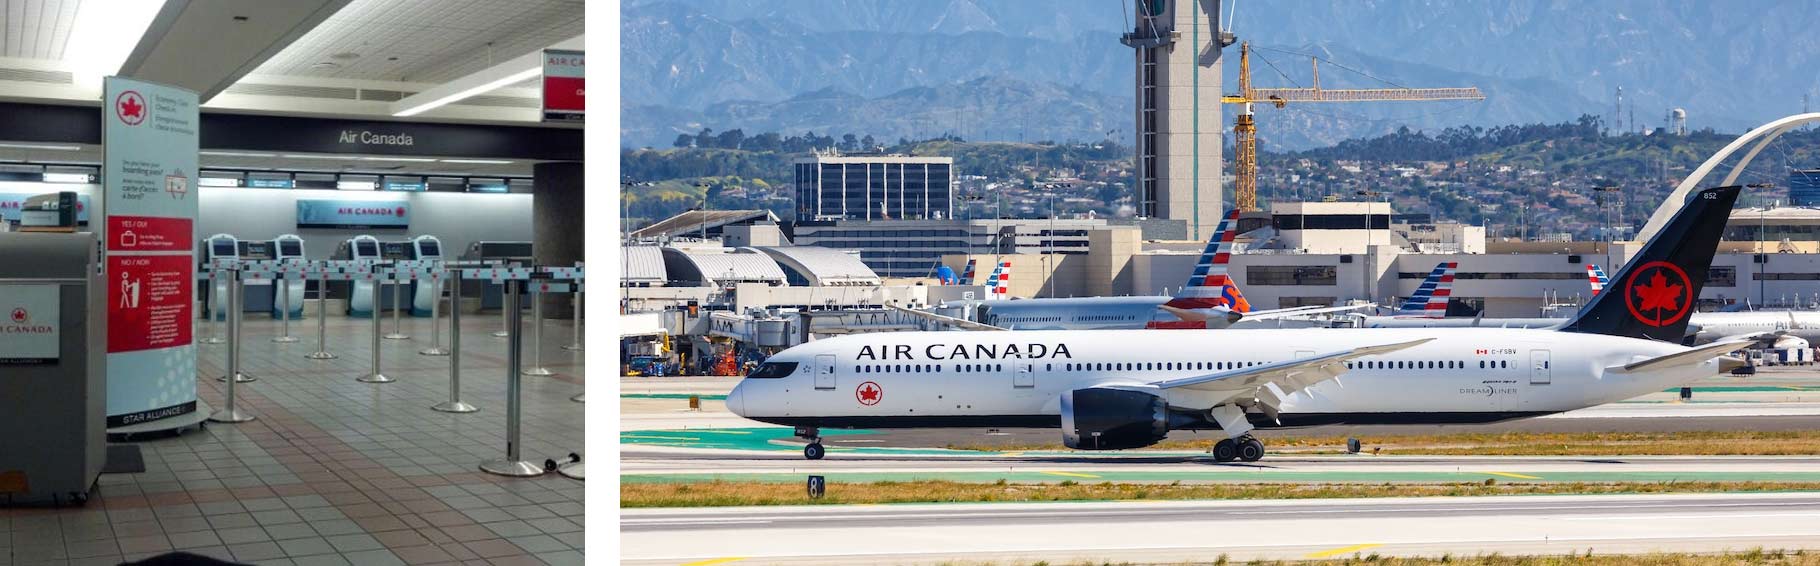 Air Canada lax airport